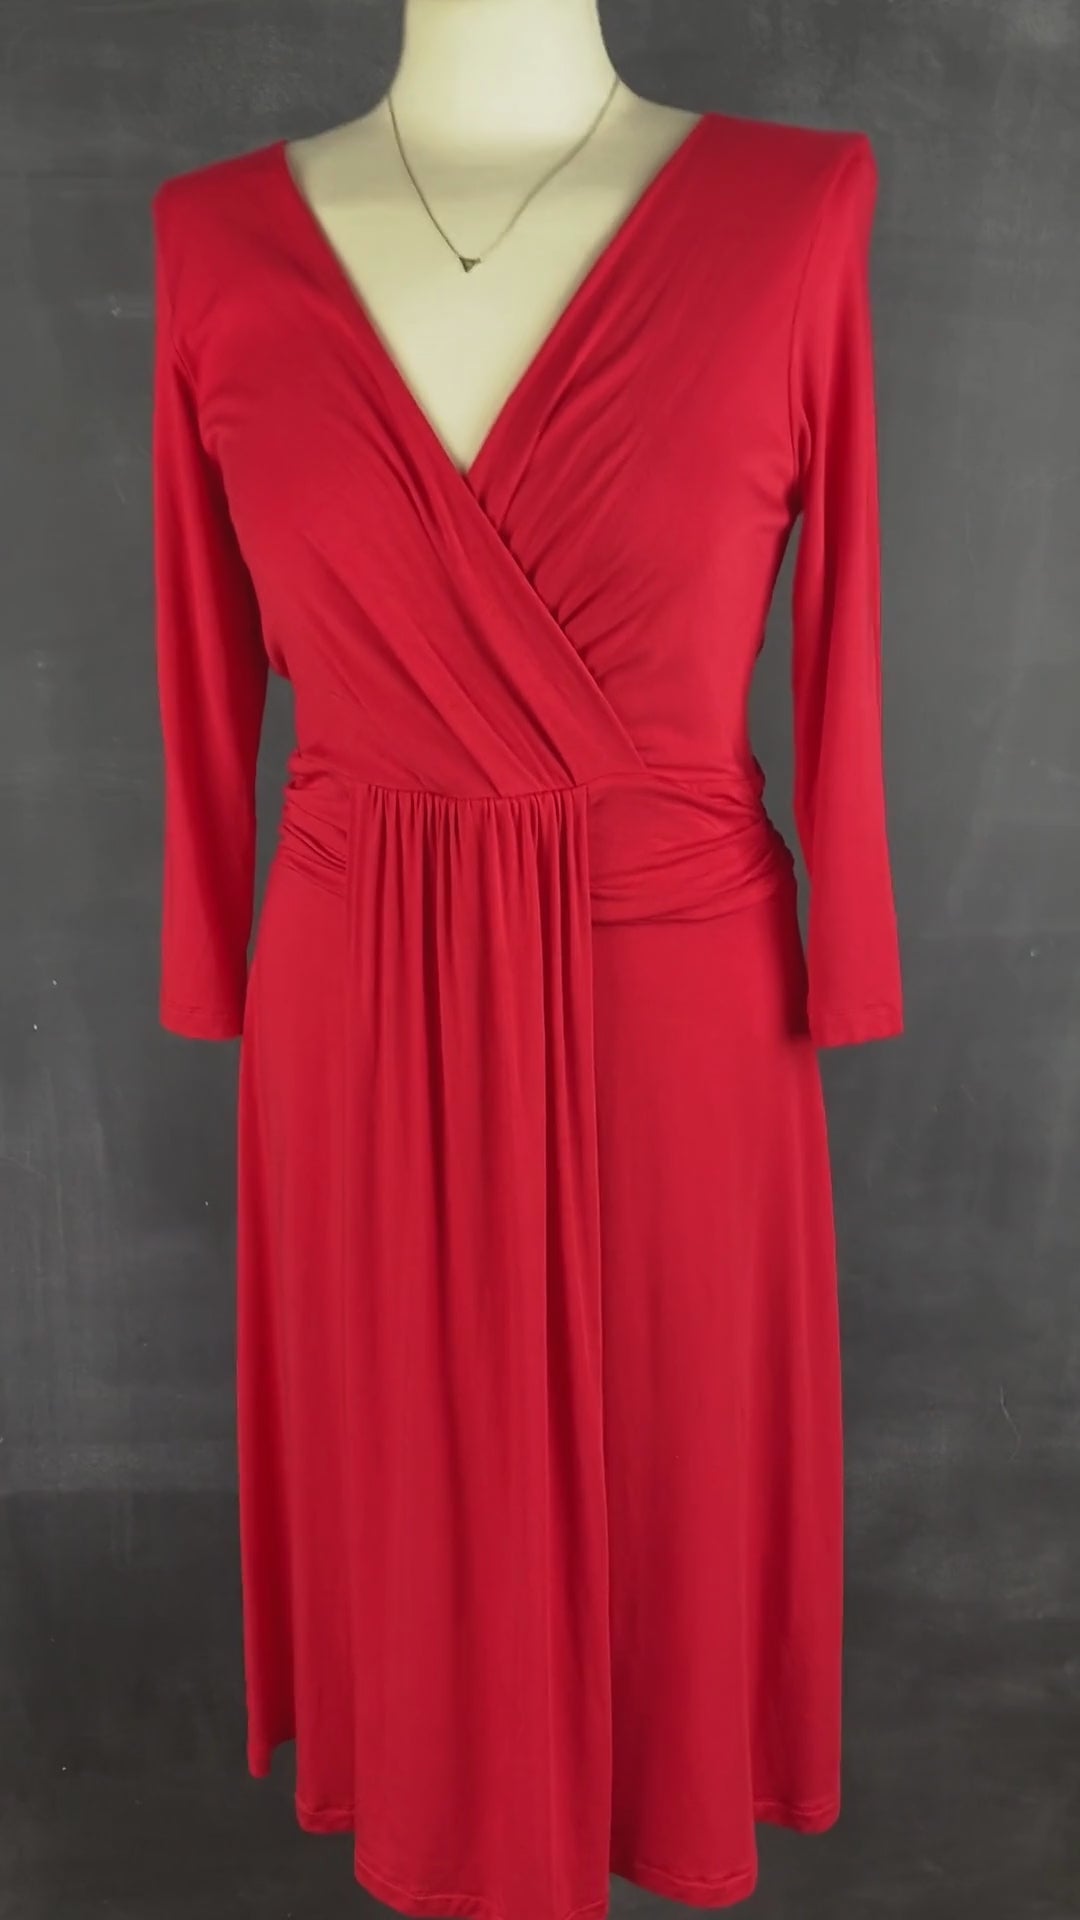 Robe rouge extensible cache-coeur drapé Tristan, taille medium. Vue de la vidéo qui présente tous les détails de la robe.